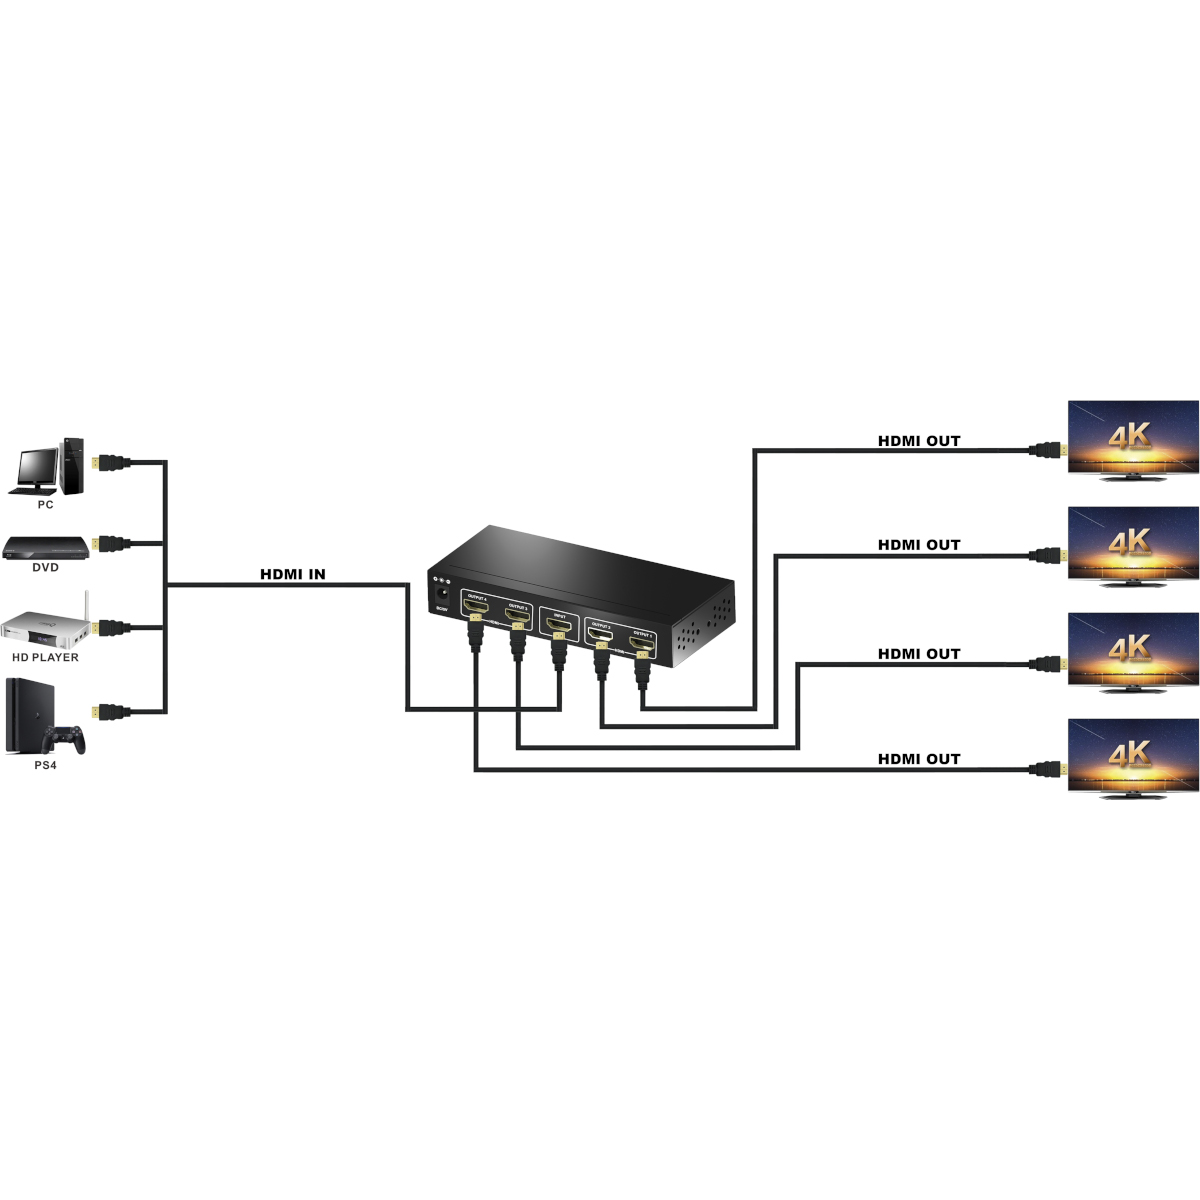 MAXTRACK CS25-4L 4K HDMI® Verteiler HDMI® Splitter